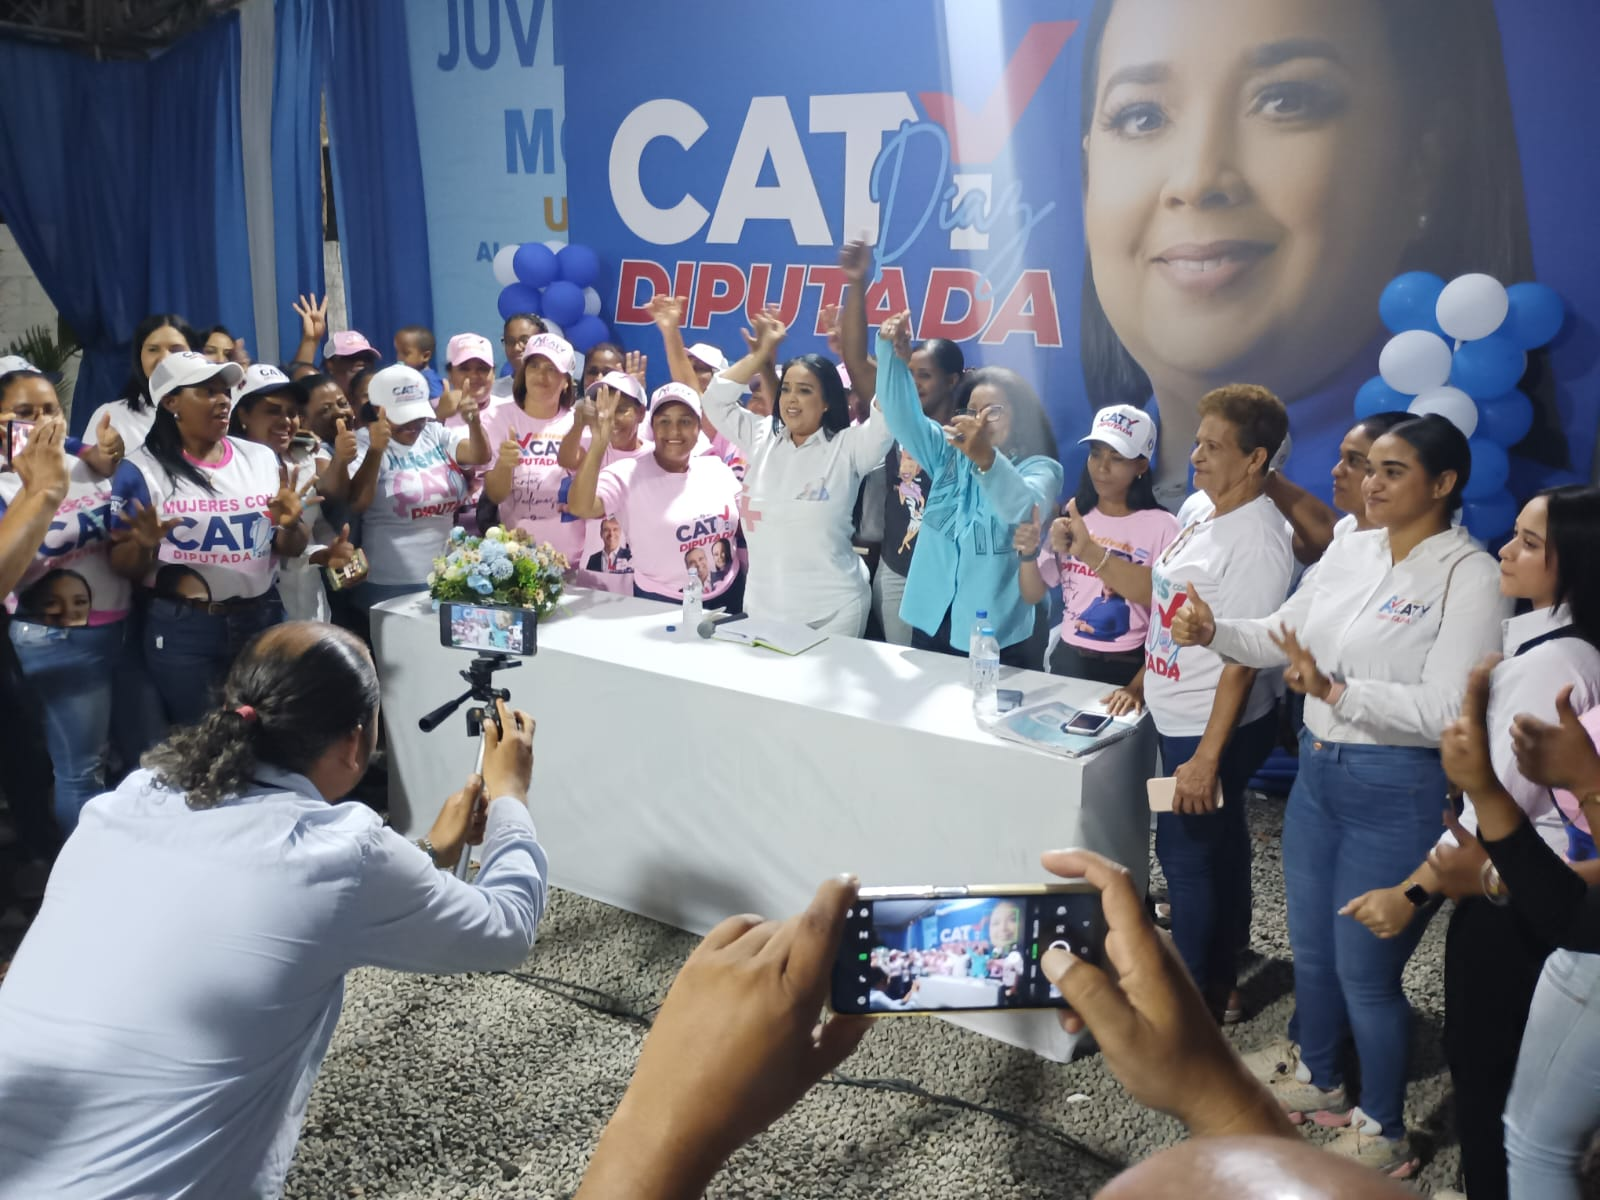 Cotuí: Cati Díaz aspira a convertirse en la primera mujer curul